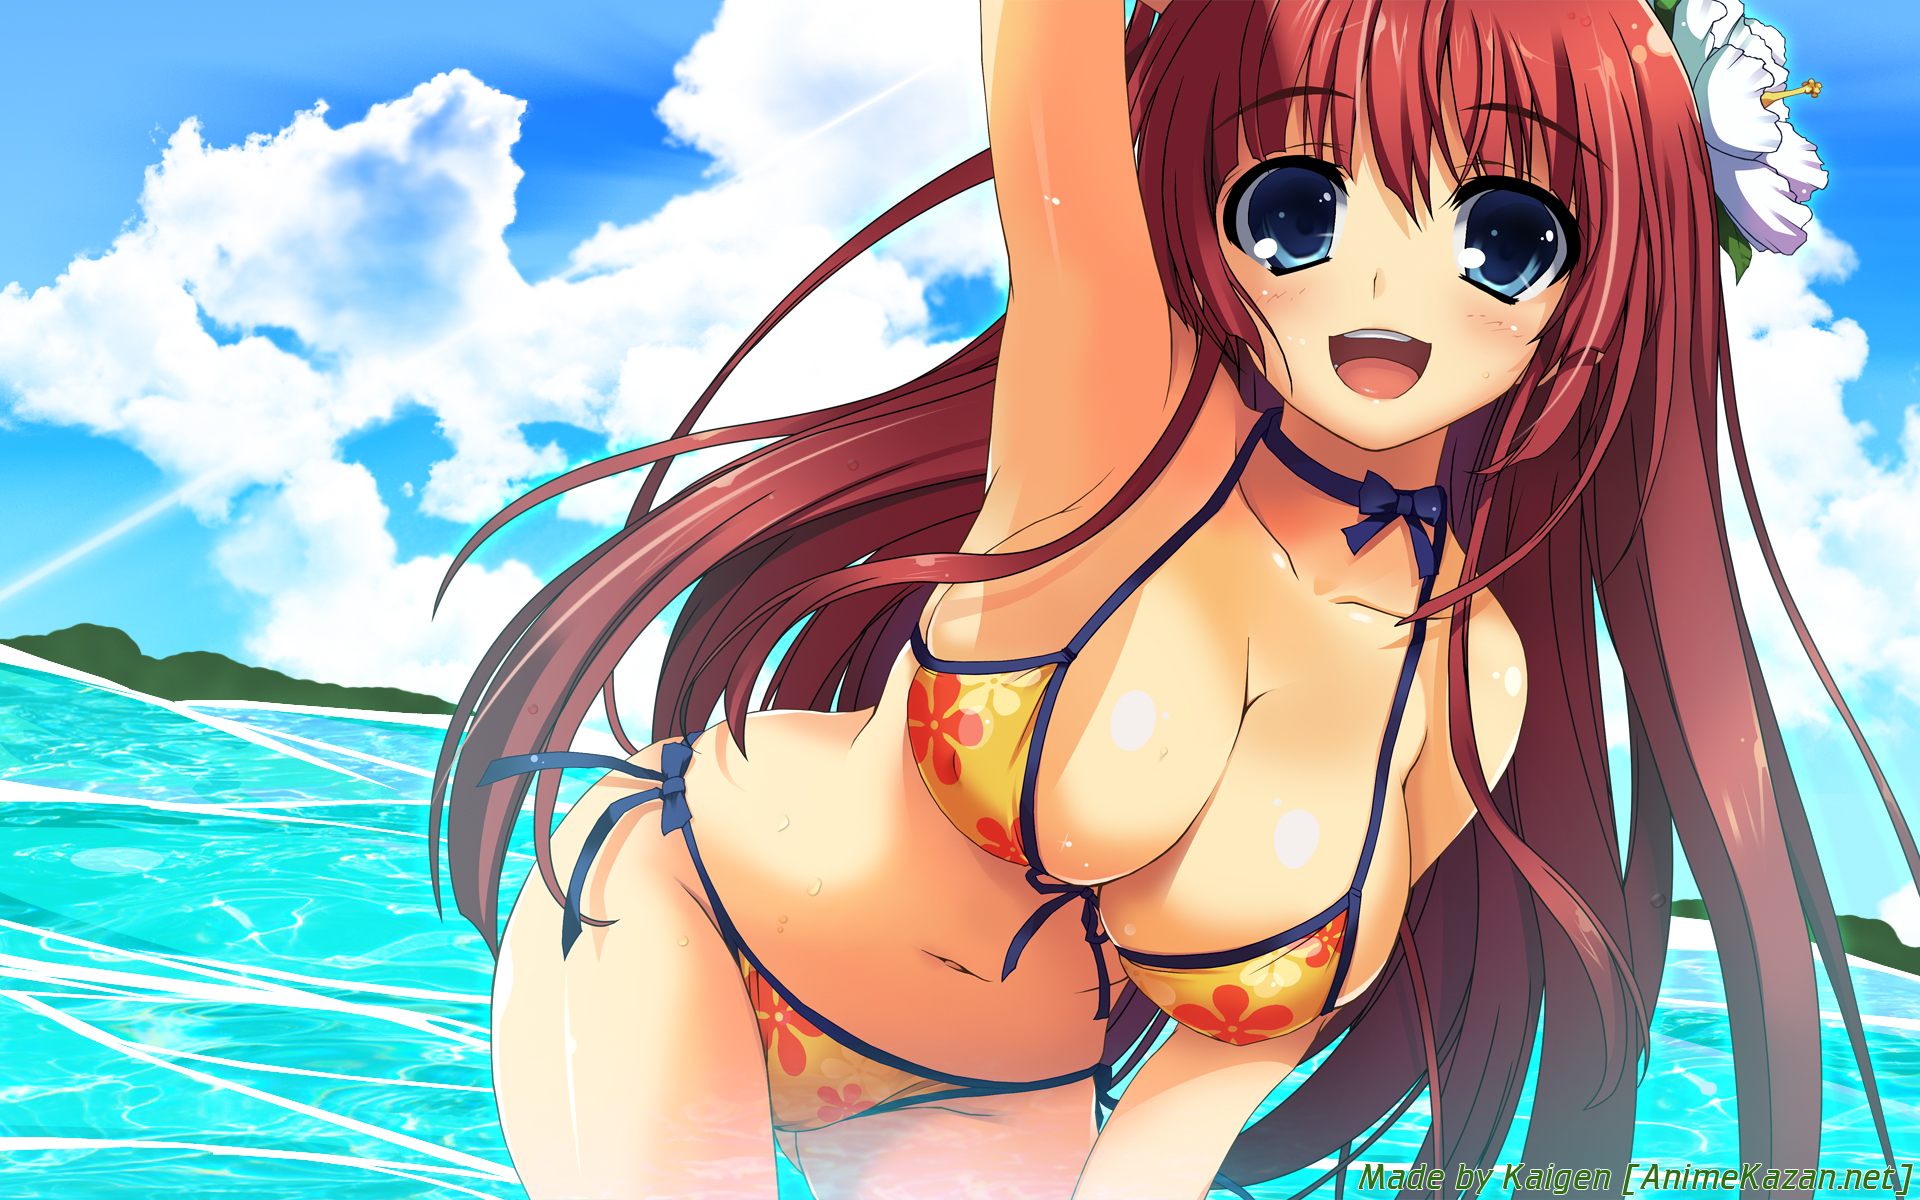 Hot Anime Girls In Bikinis / Monster girls 1 nsfw by sweet shark. 